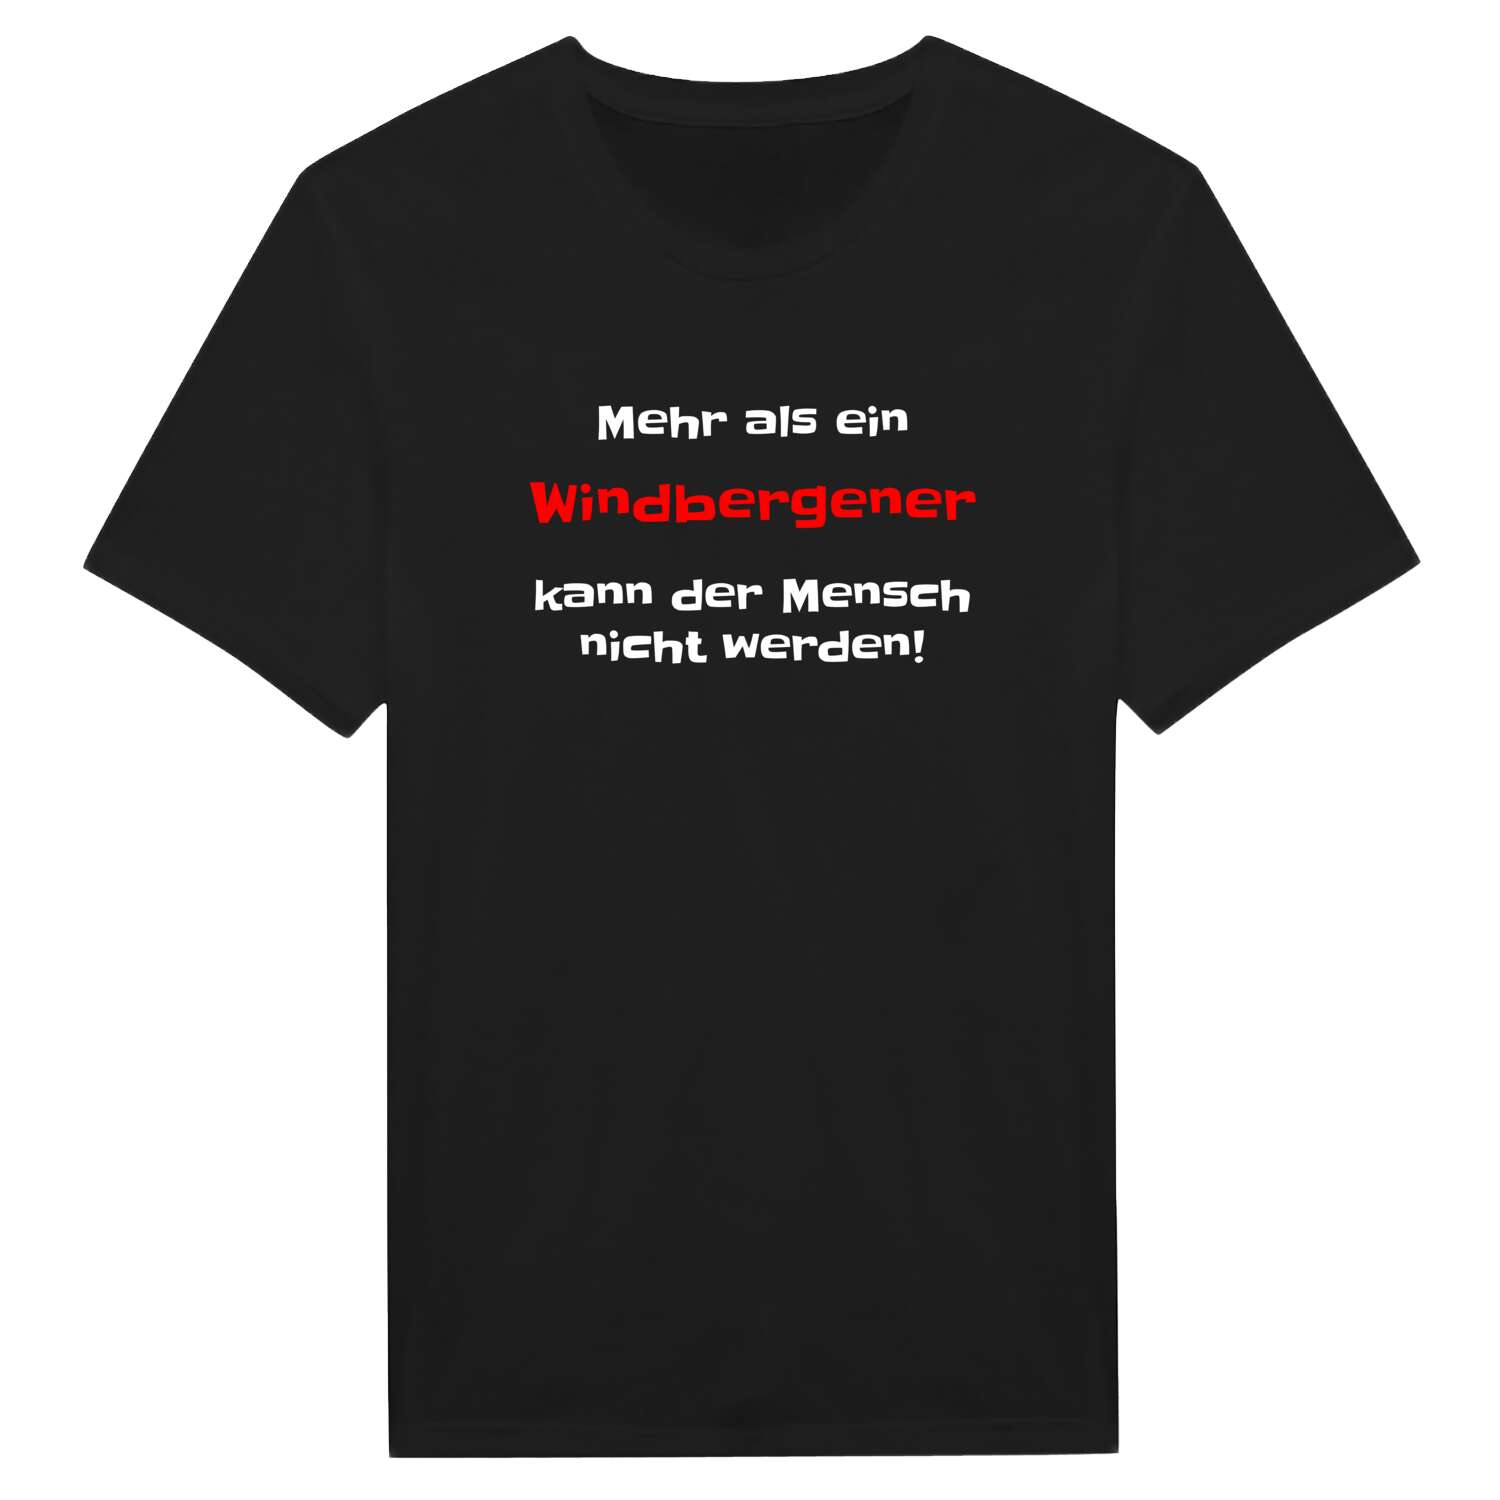 Windbergen T-Shirt »Mehr als ein«